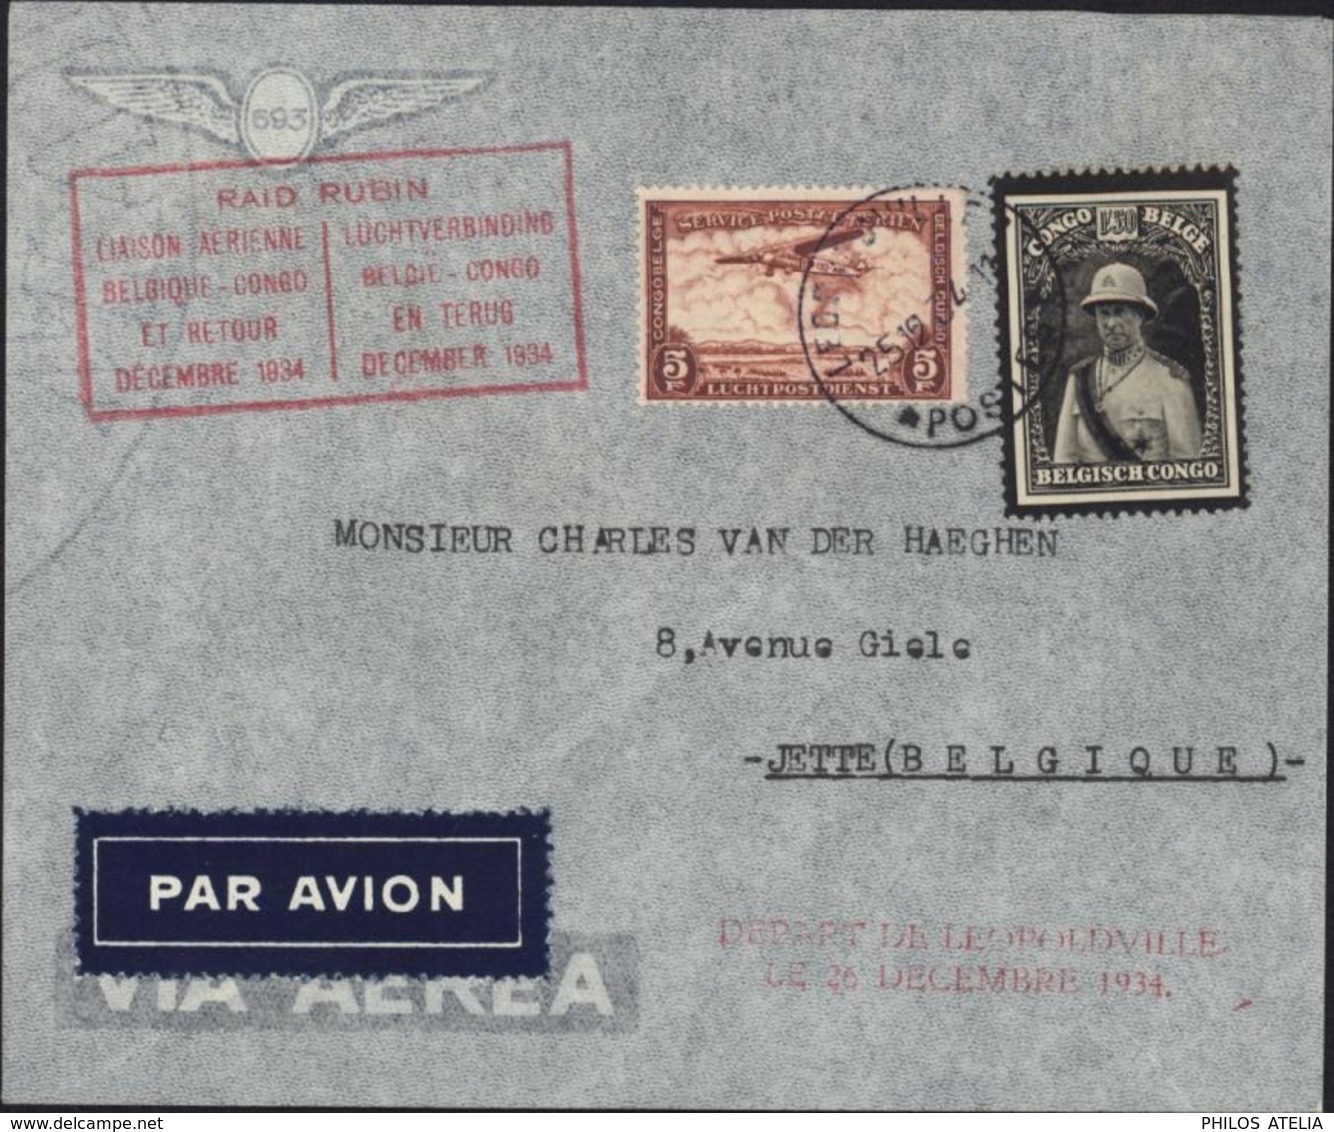 Congo Belge Poste Aérienne Raid Rubin Liaison Aérienne Belgique Congo Et Retour Décembre 1934 YT 184 + PA12 - Storia Postale